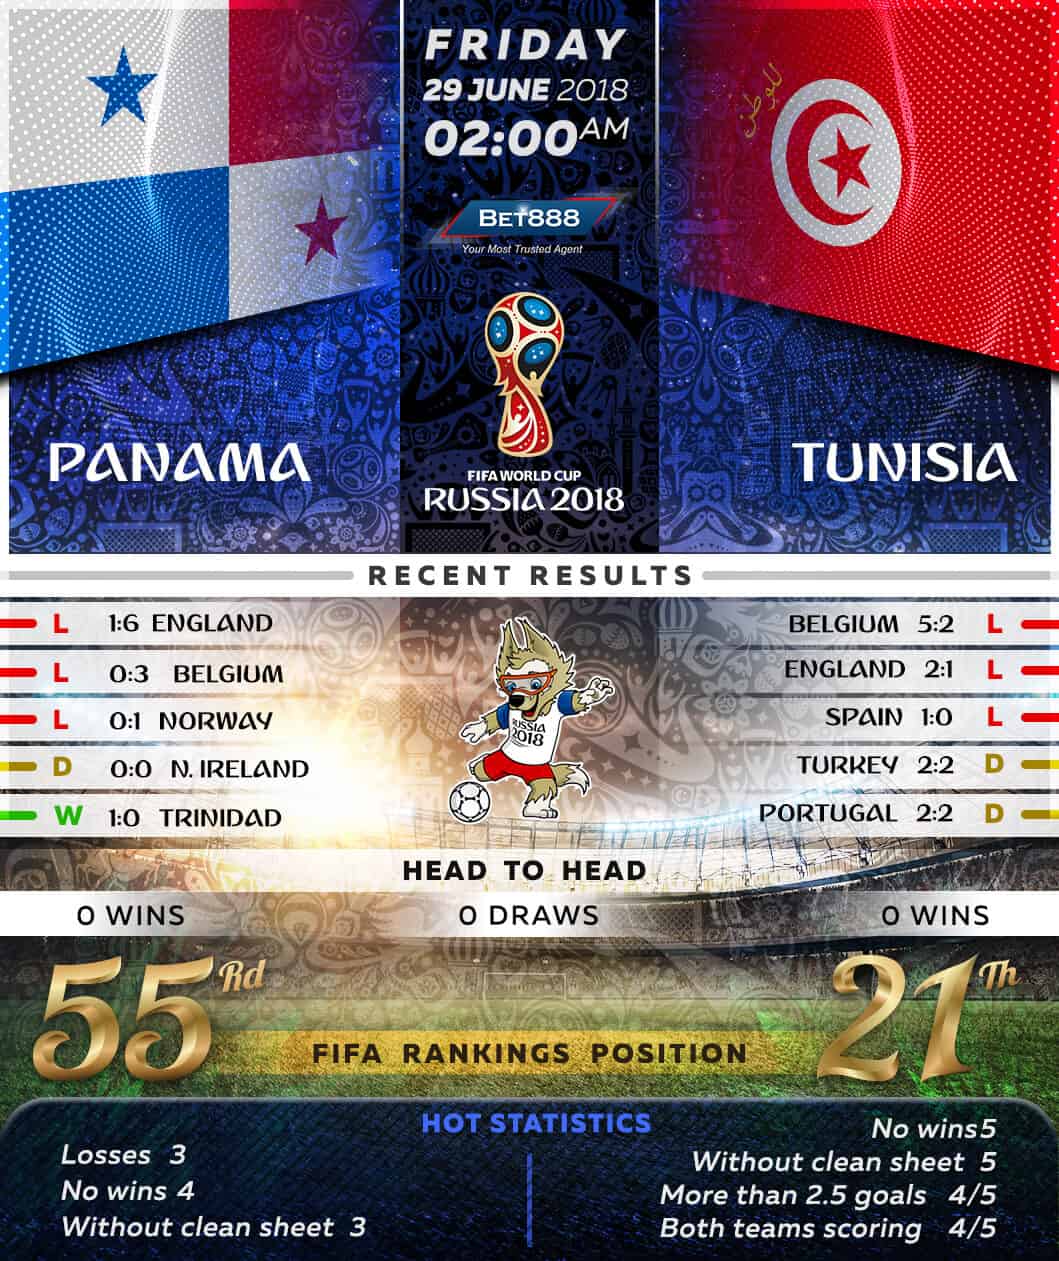 Panama vs Tunisia 29/06/18